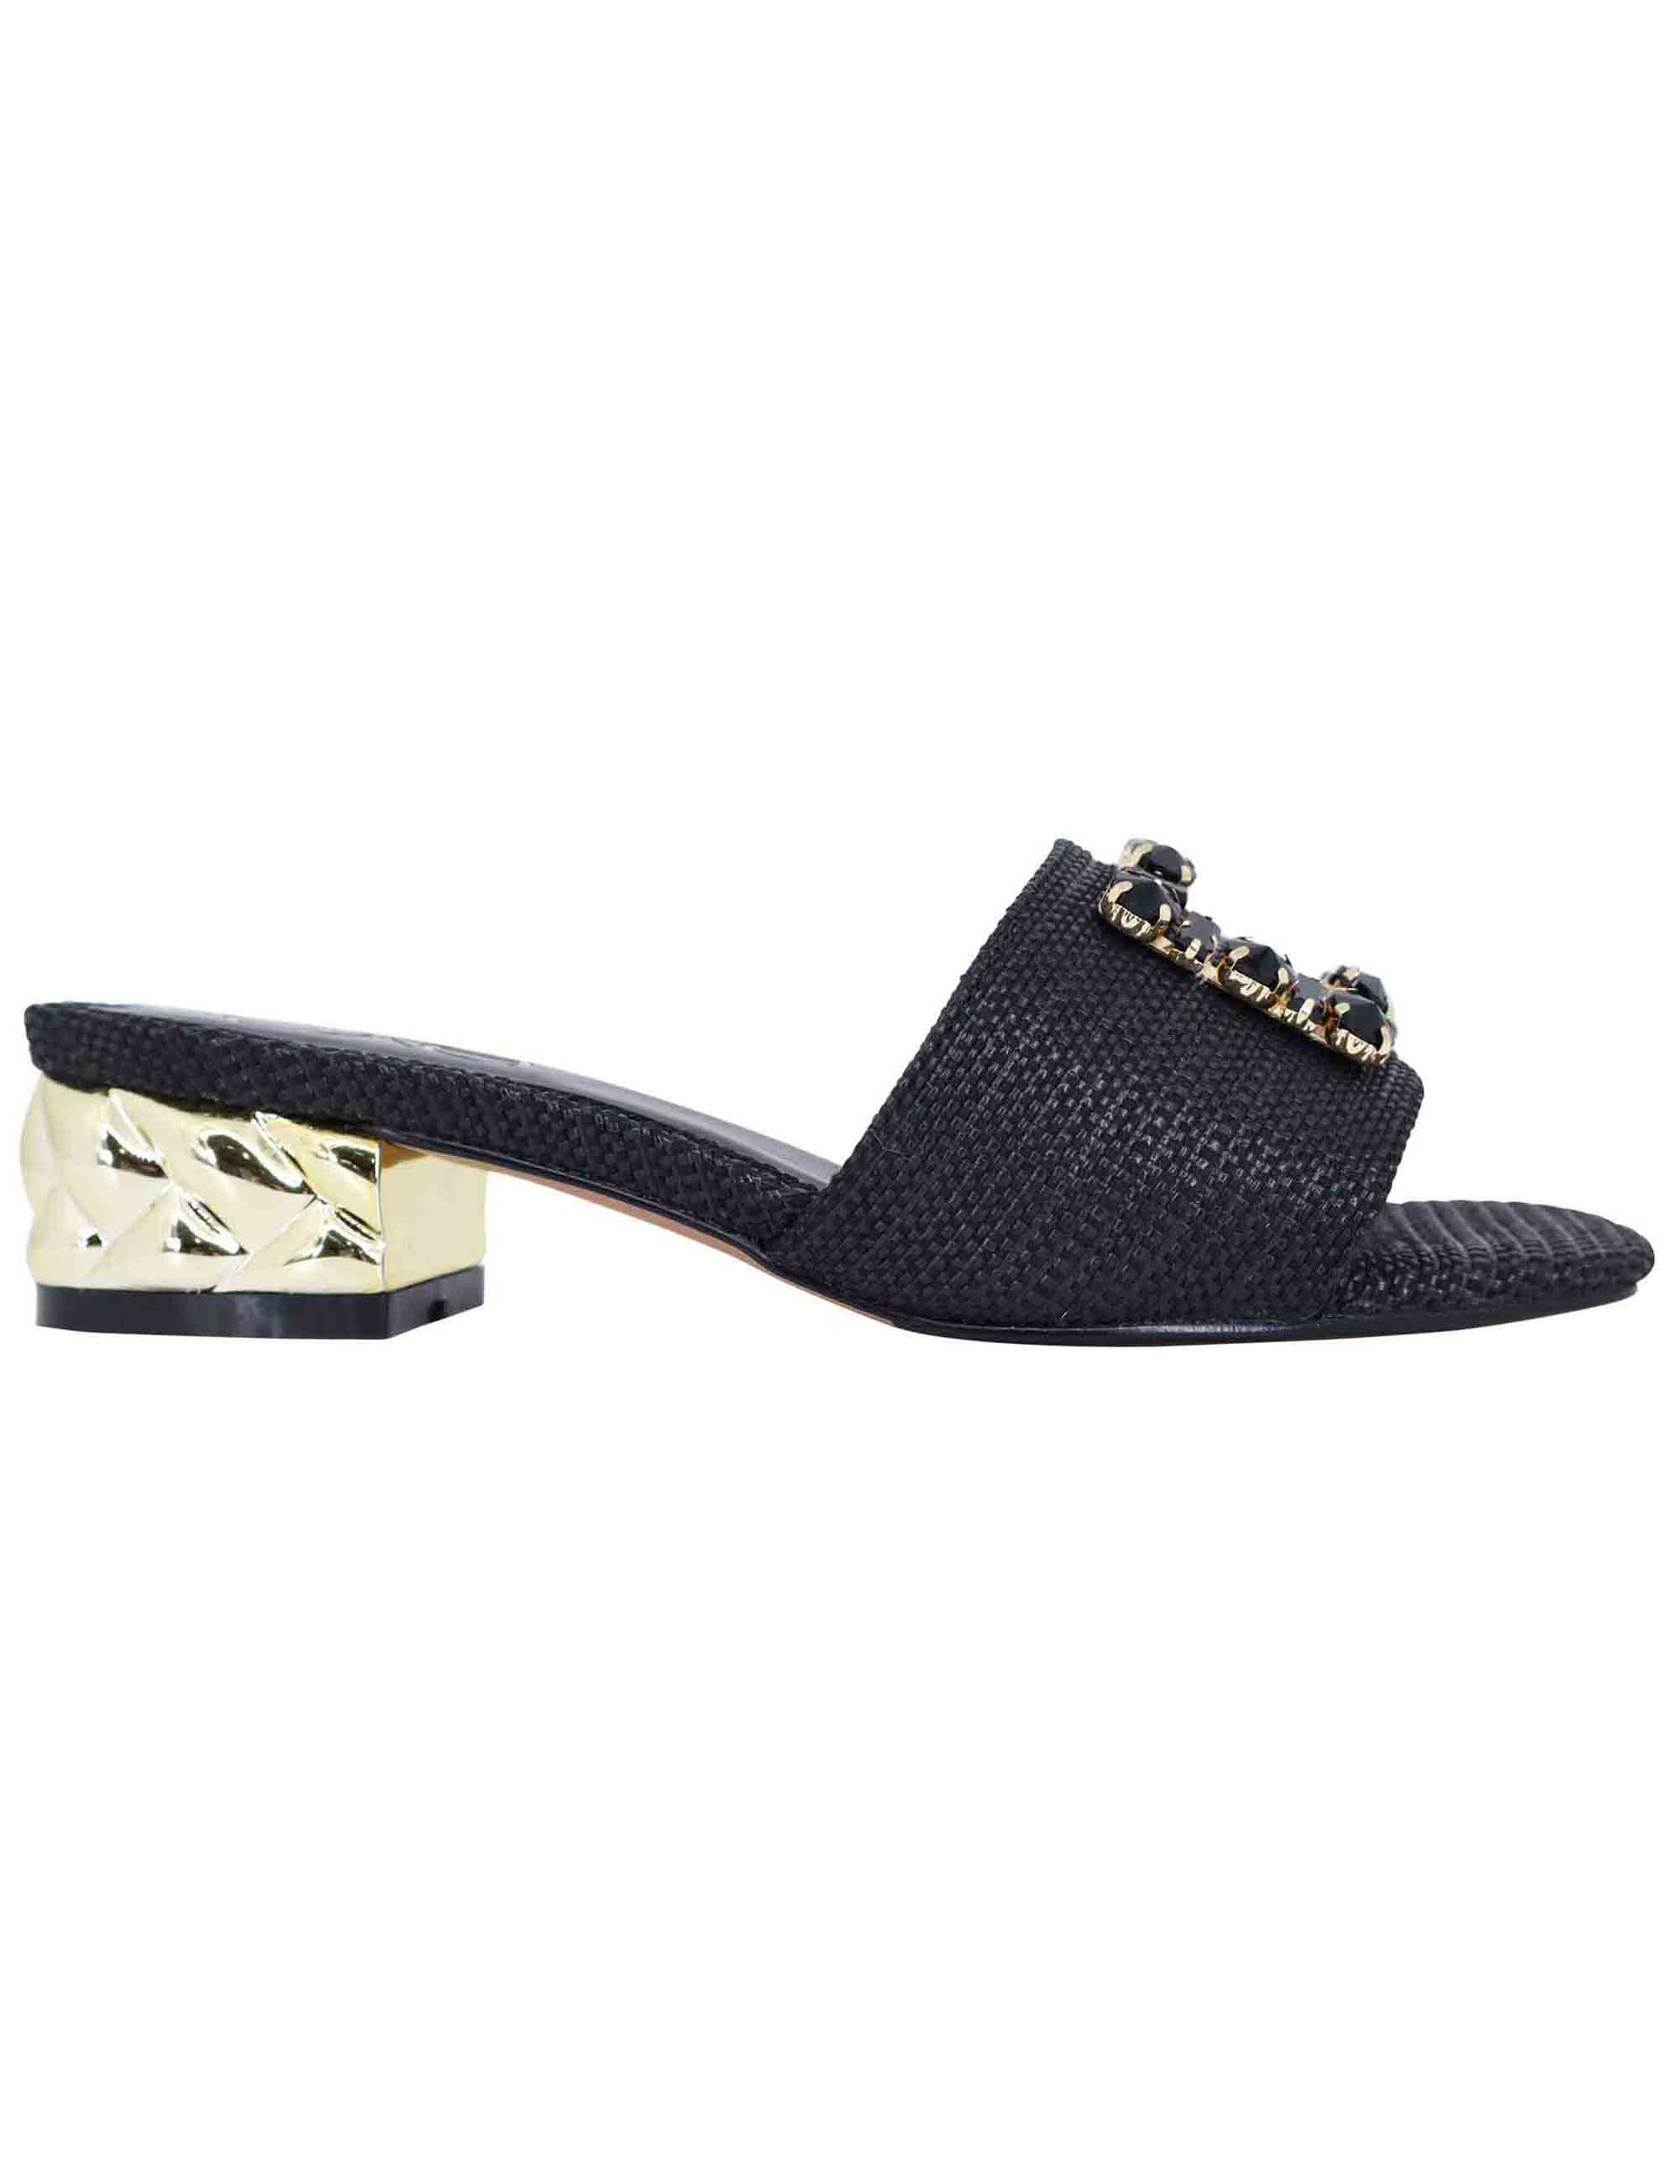 Women's sandals in black fabric with horsebit and low jewel heel